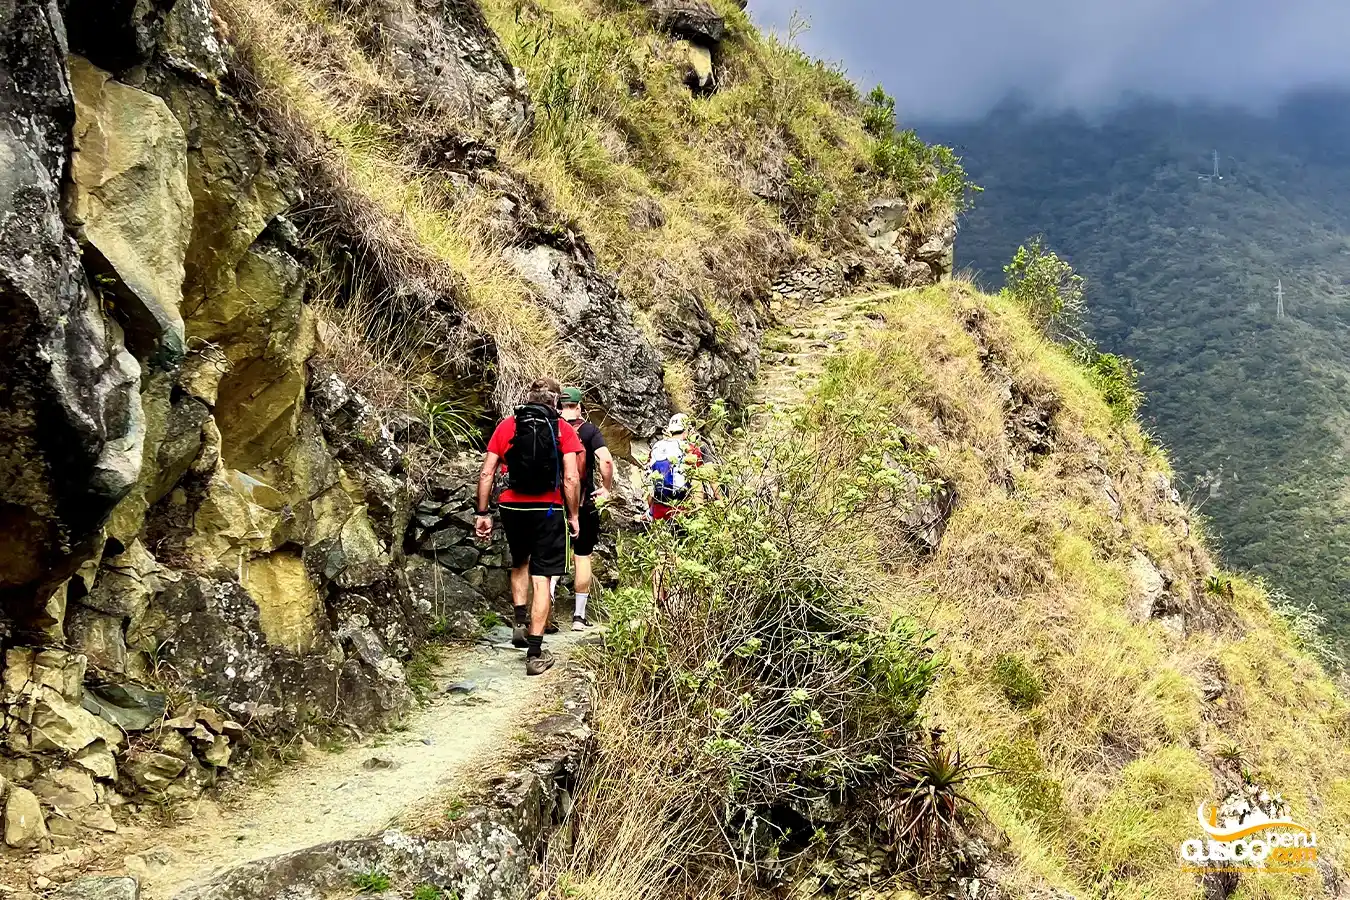 Caminho Inca para Machu Picchu, parte do Qhapaq Ñan.
Fonte: CuscoPeru.Com